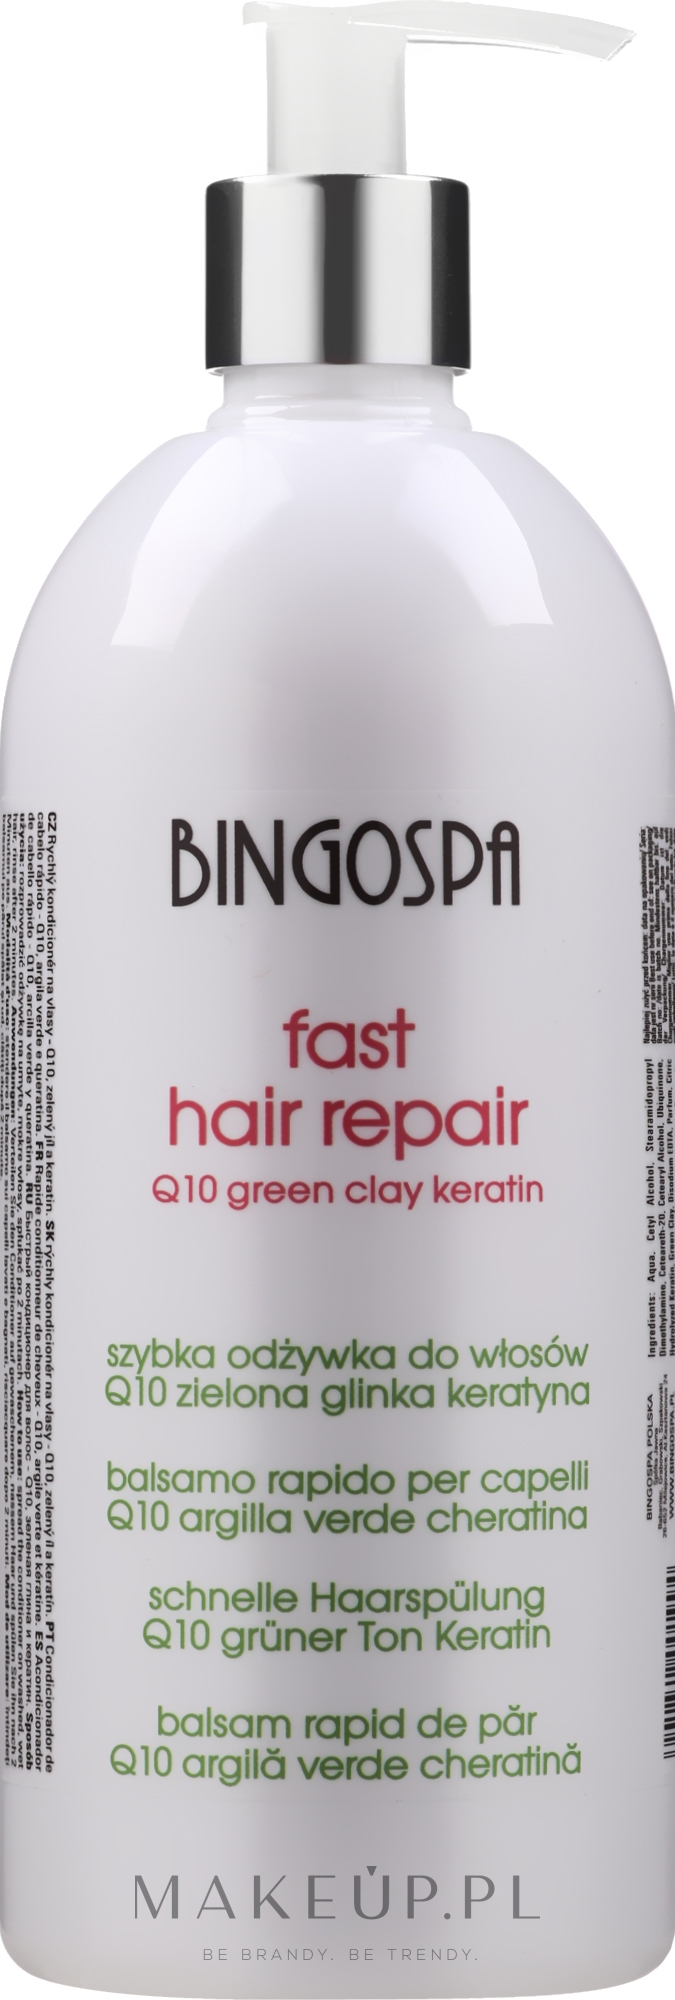 bingospa fast hair szybka odżywka do włosów